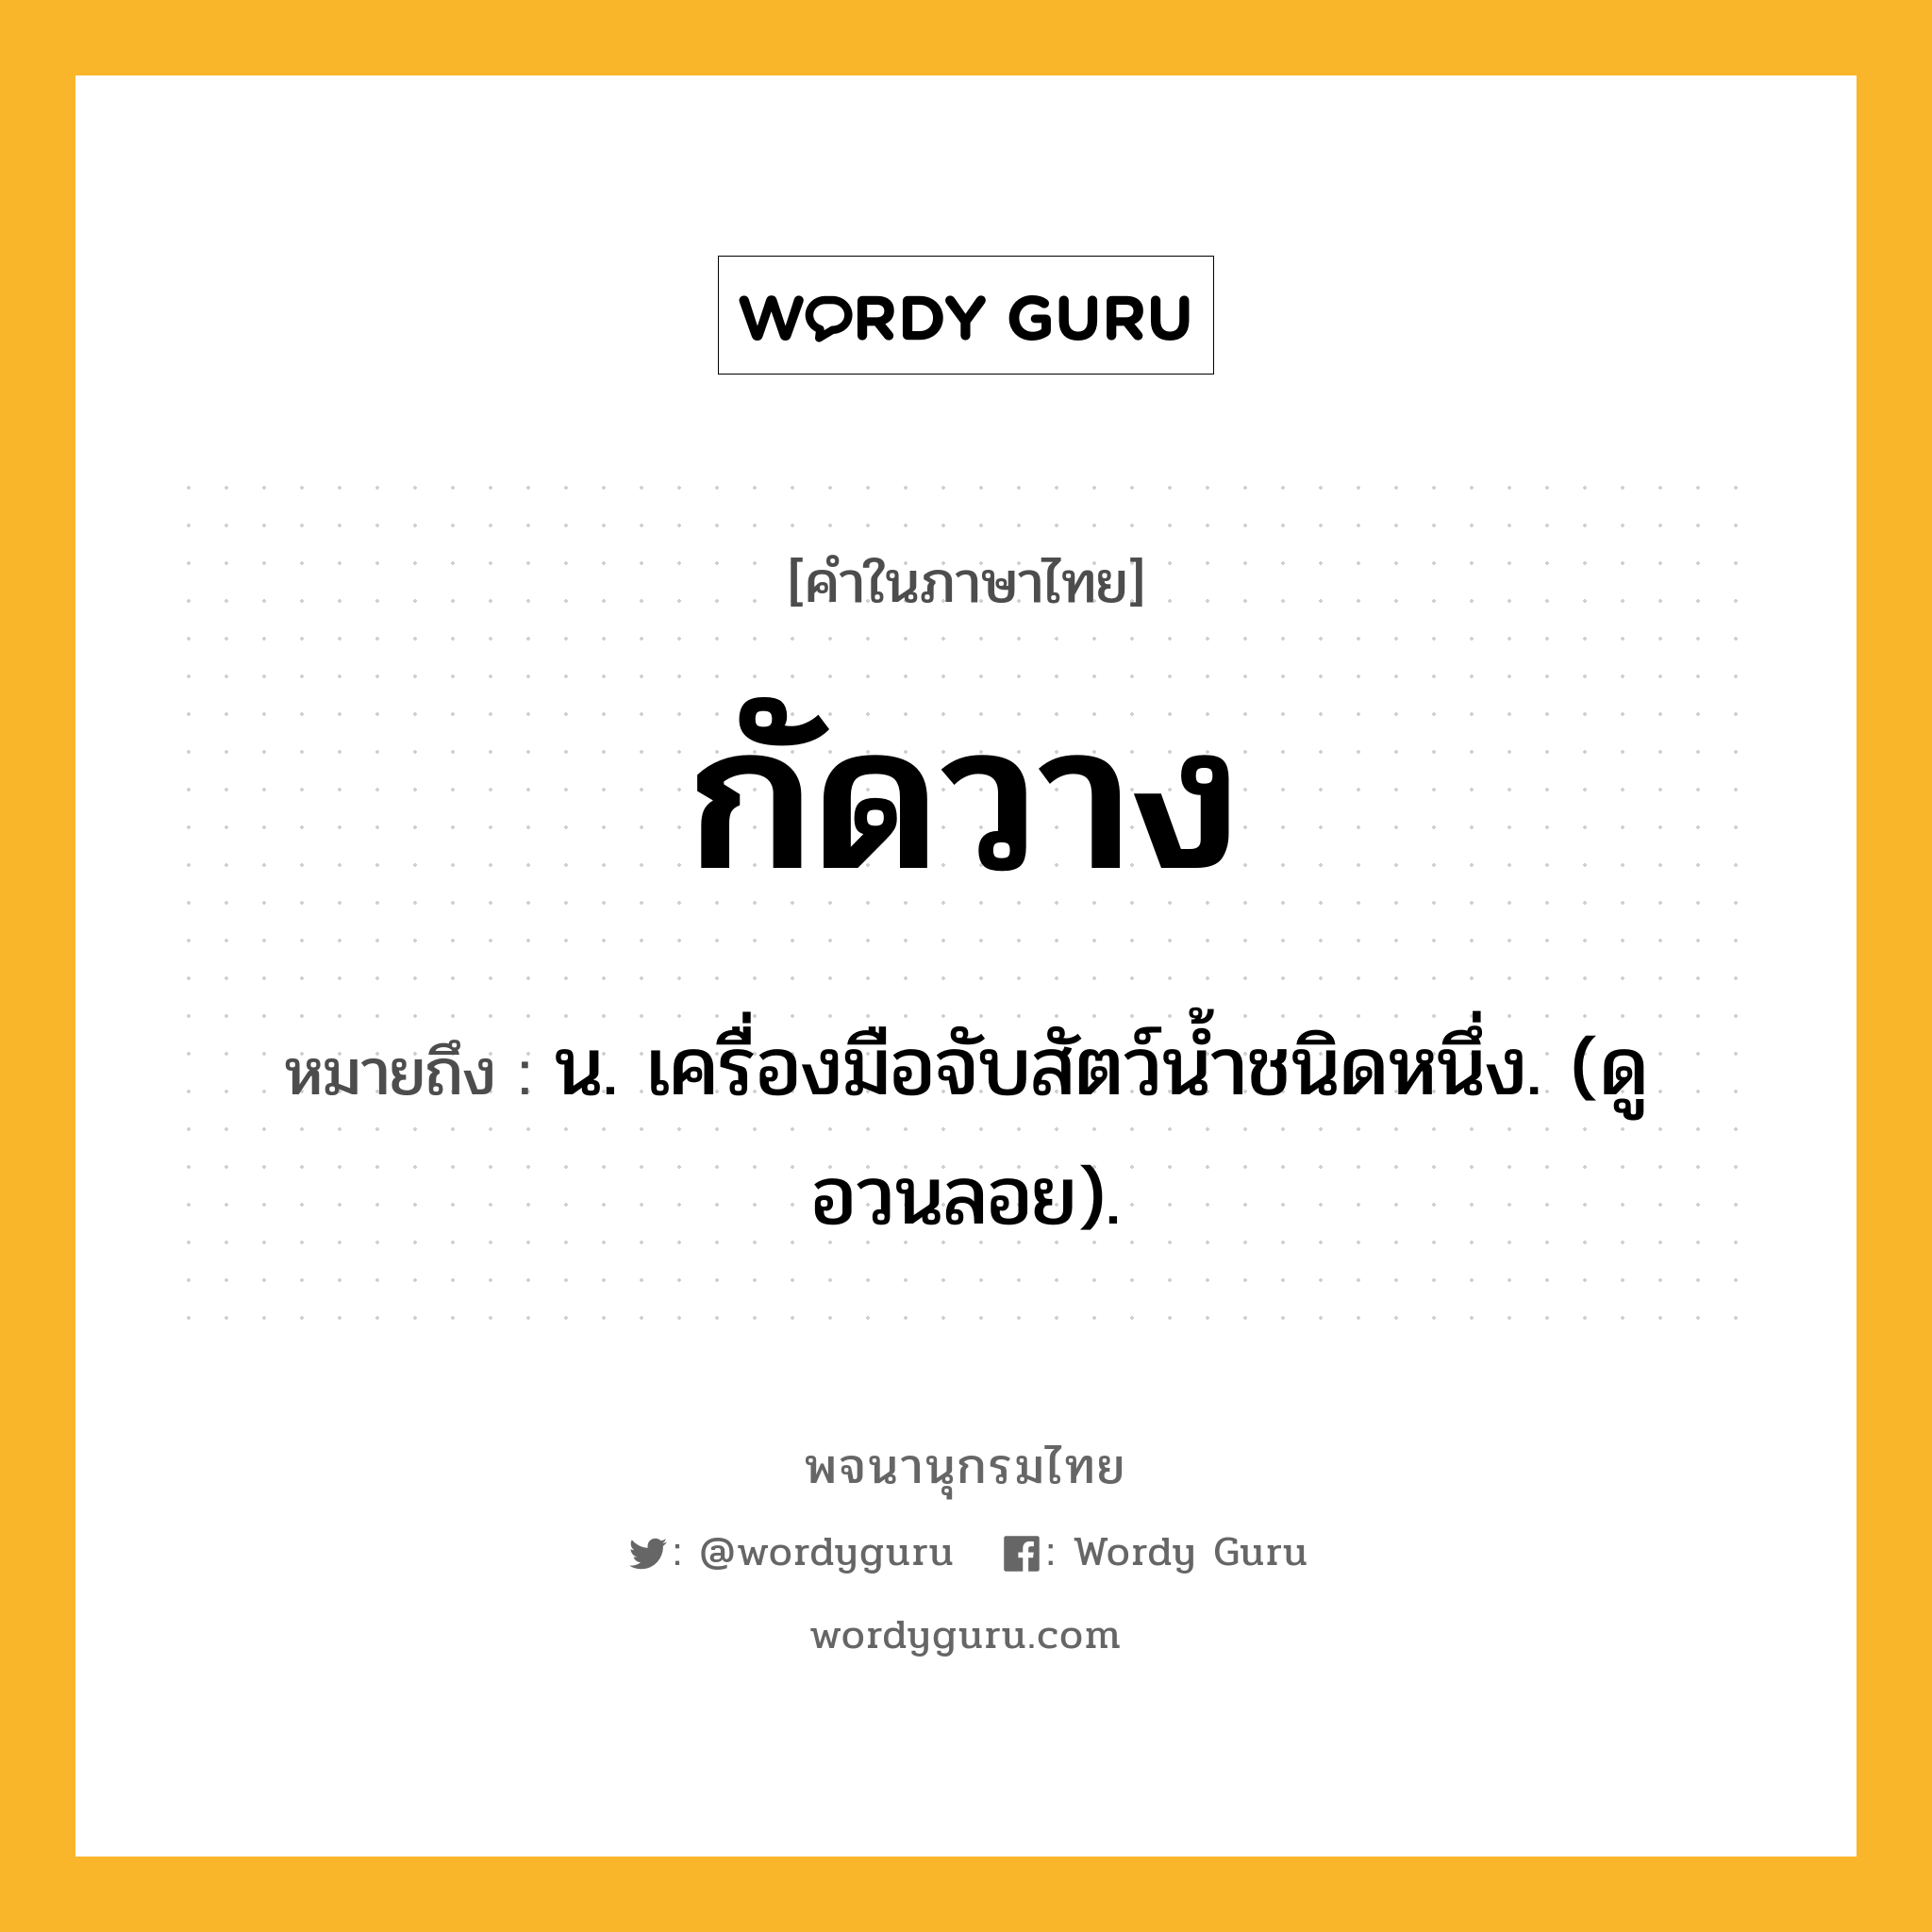 กัดวาง ความหมาย หมายถึงอะไร?, คำในภาษาไทย กัดวาง หมายถึง น. เครื่องมือจับสัตว์นํ้าชนิดหนึ่ง. (ดู อวนลอย).